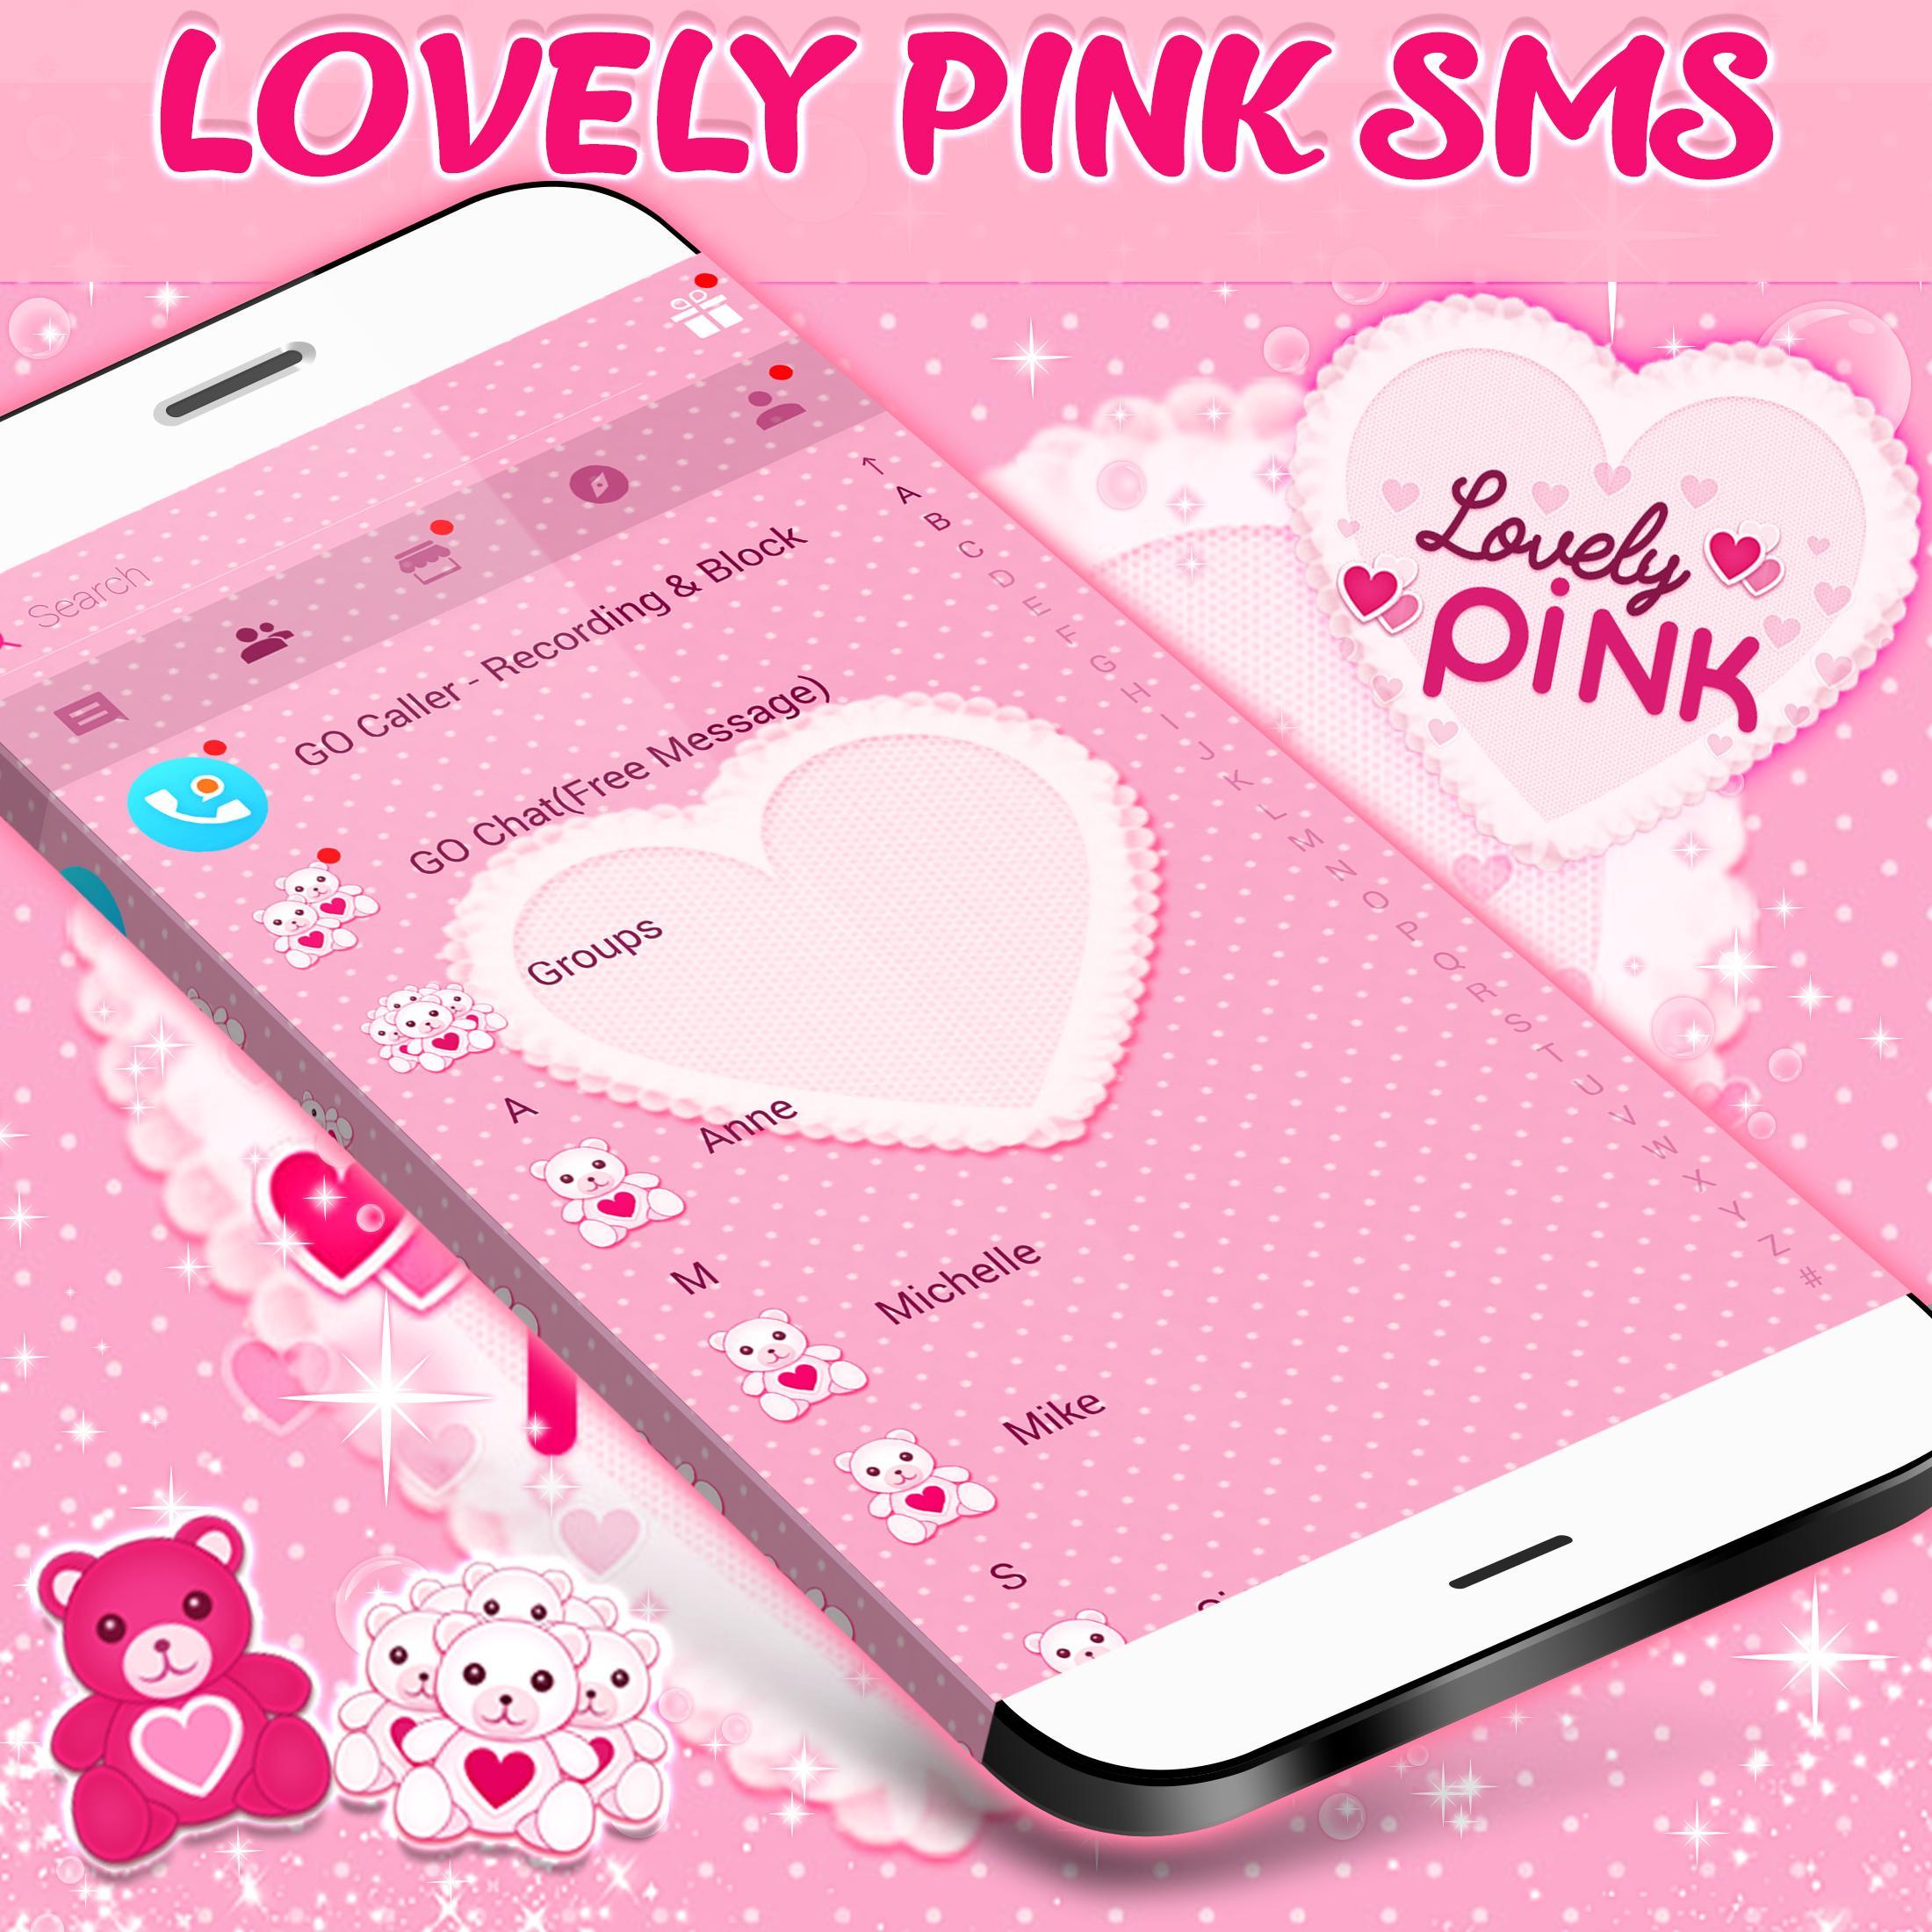 Màu hồng cũng là màu của tình yêu và lãng mạn. Với chủ đề SMS màu hồng, bạn có thể truyền tải những thông điệp yêu thương cho người thân và bạn bè của mình một cách sâu sắc và ngọt ngào. Hãy tham khảo những hình ảnh đầy màu sắc của chủ đề này để tạo cho mình những cảm xúc đặc biệt.